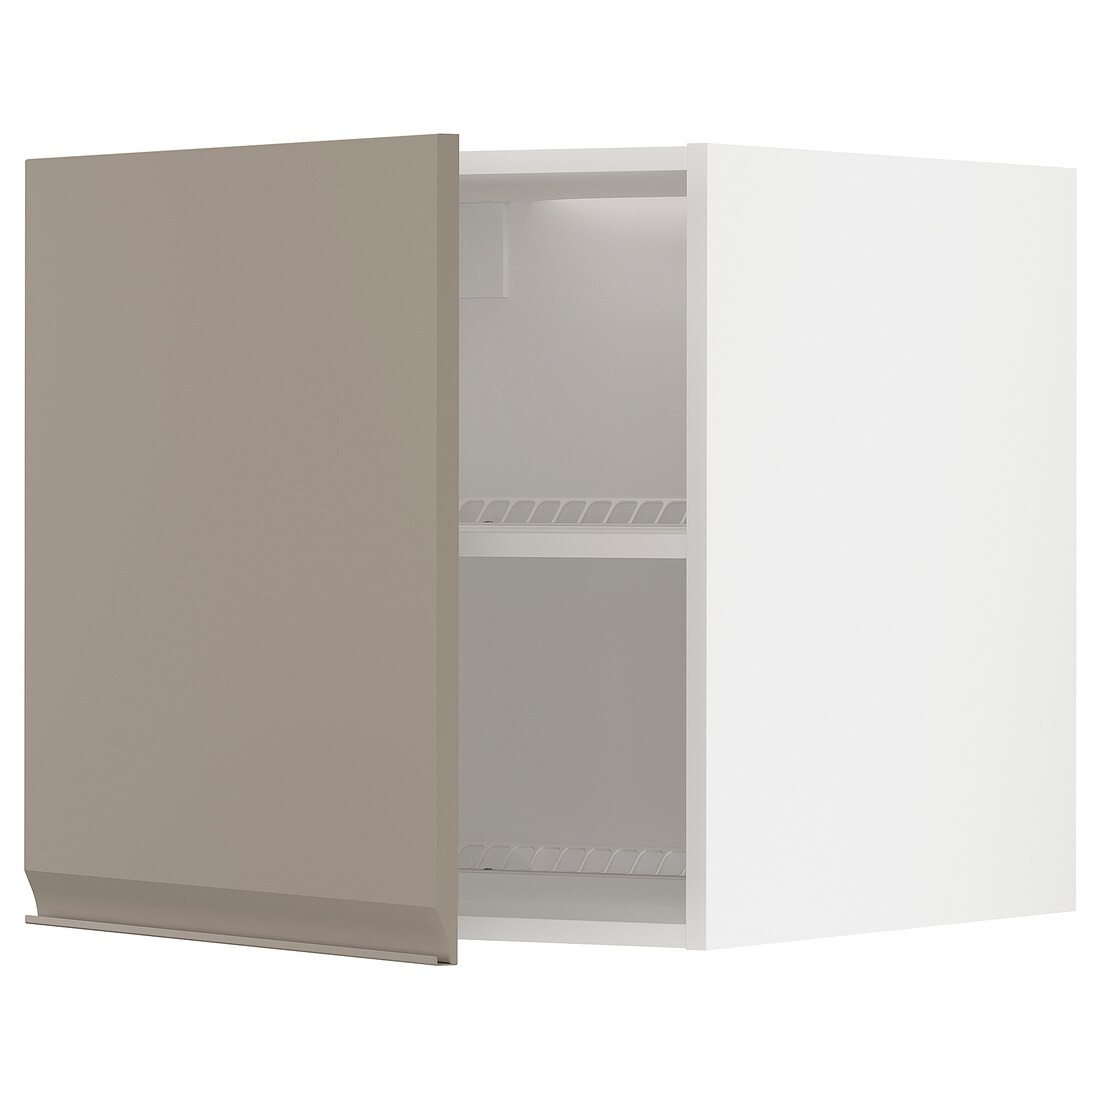 METOD МЕТОД Верхня шафа для холодильника / морозильника, білий / Upplöv матовий темно-бежевий, 60x60 см